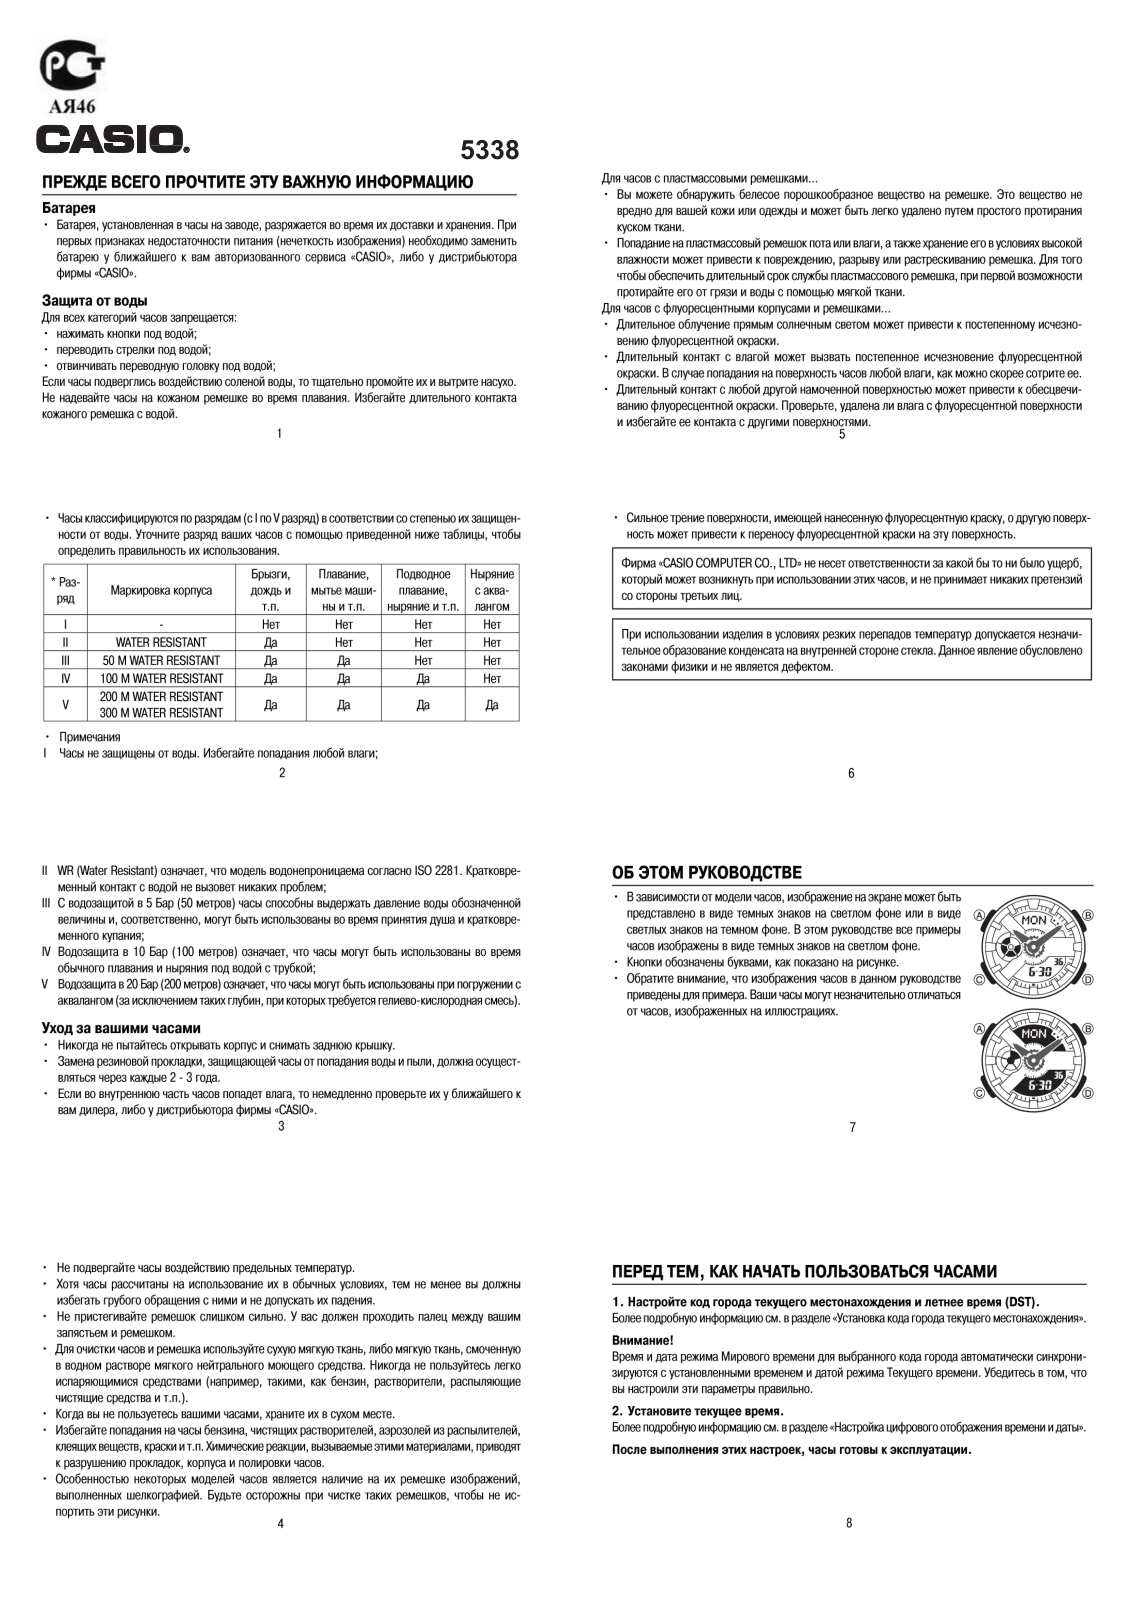 Casio BA-110CH-3A User Manual